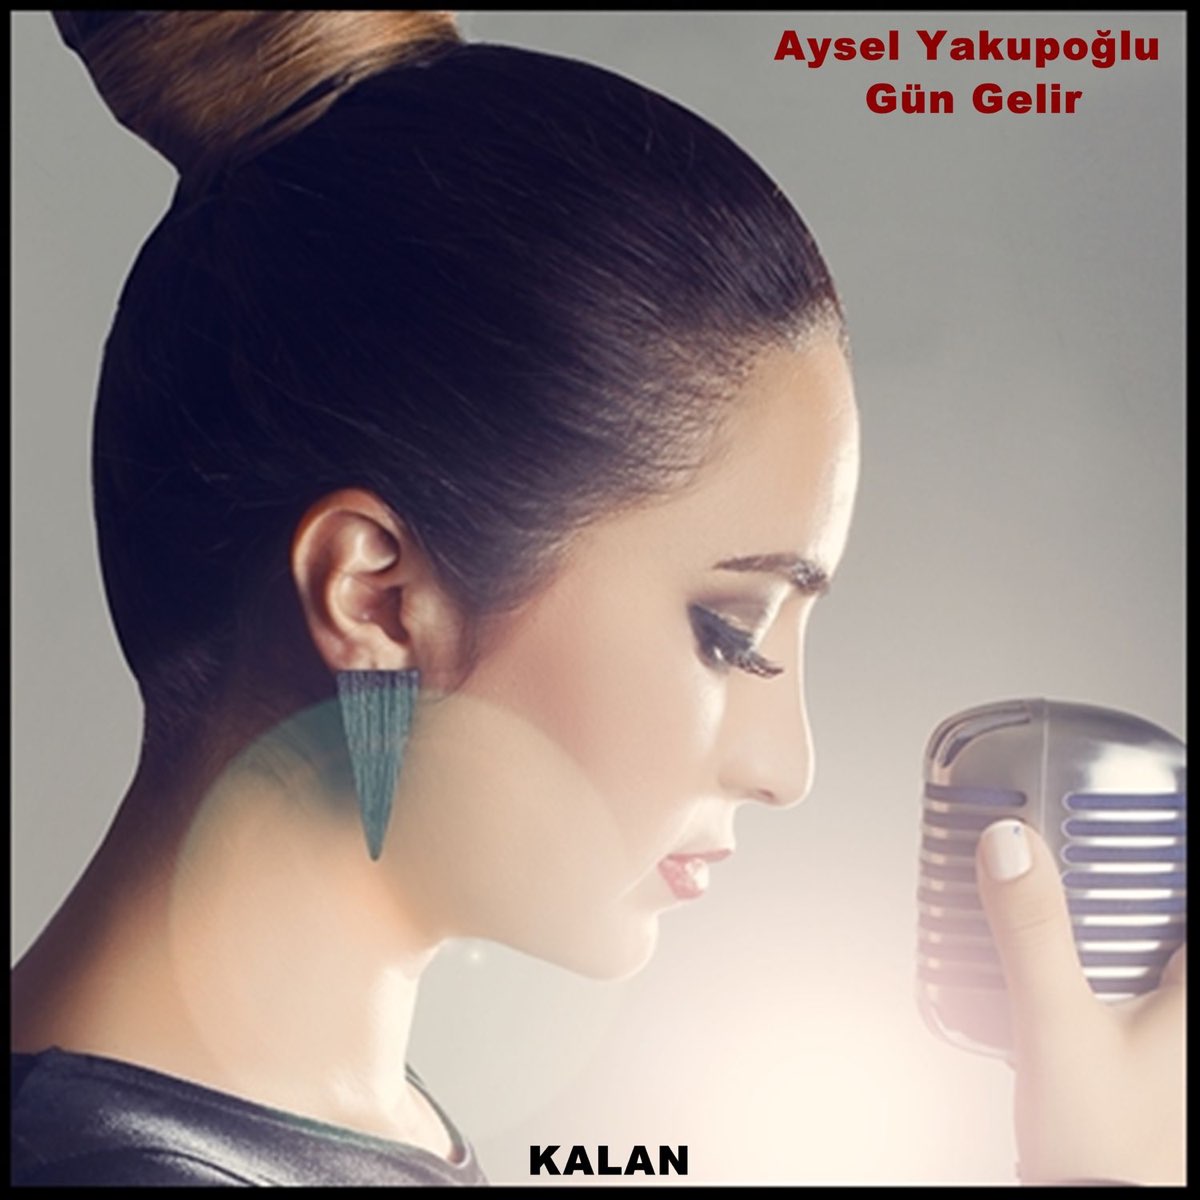 Gün Gelir - Single by Aysel Yakupoğlu on Apple Music